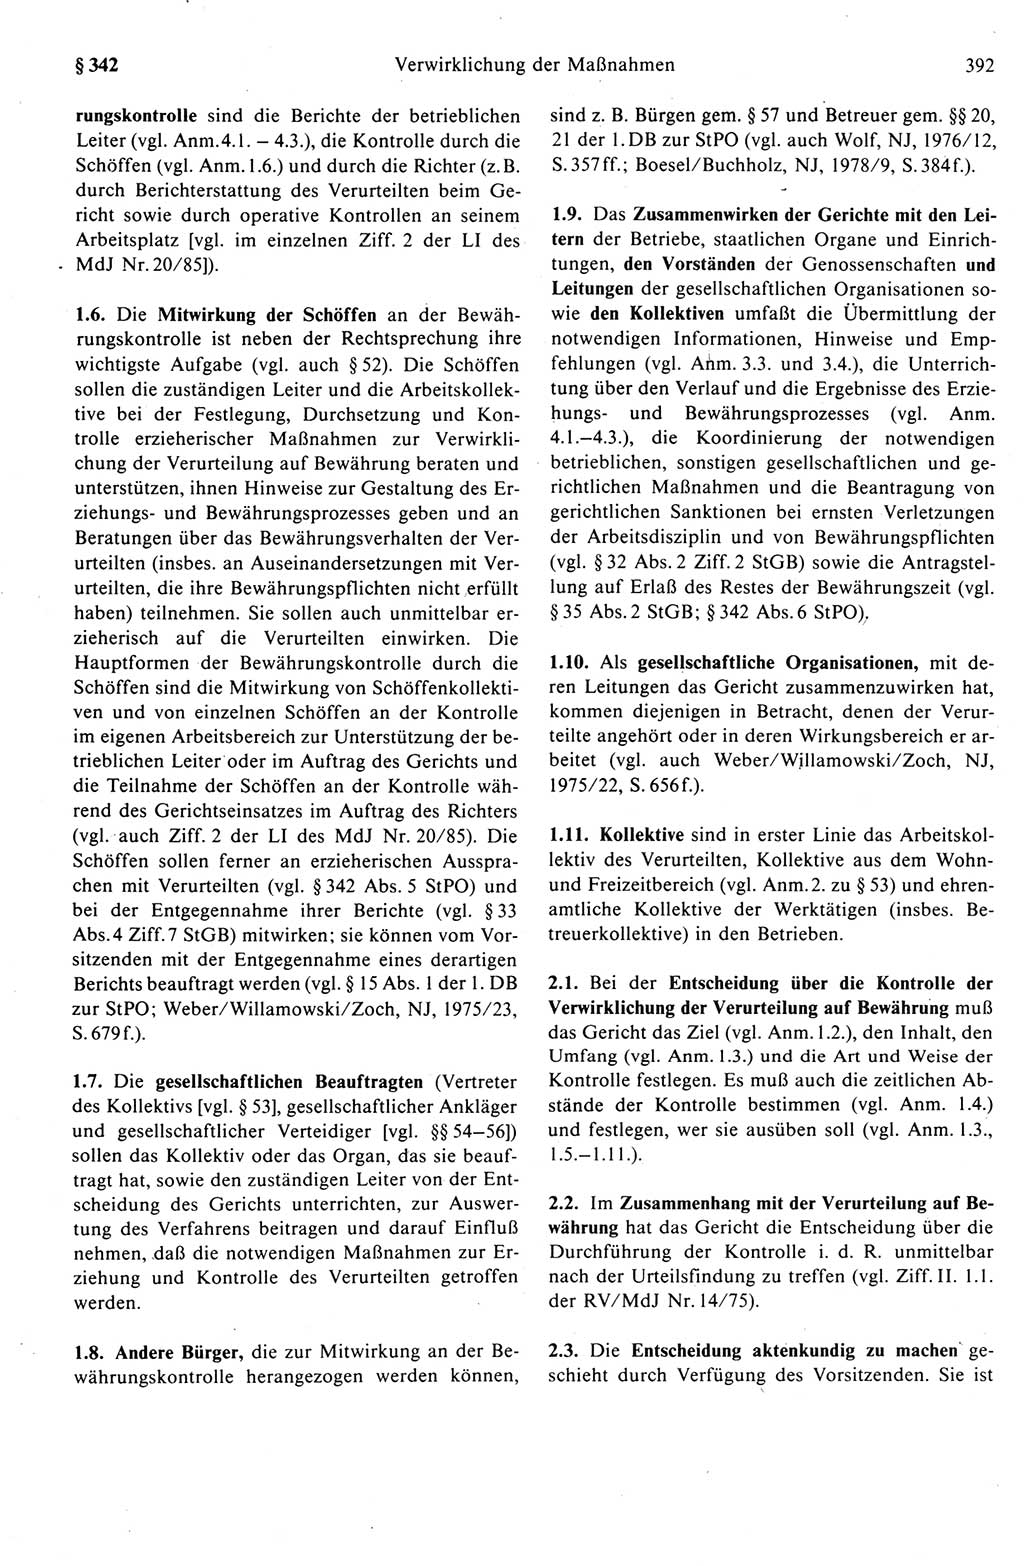 Strafprozeßrecht der DDR (Deutsche Demokratische Republik), Kommentar zur Strafprozeßordnung (StPO) 1989, Seite 392 (Strafprozeßr. DDR Komm. StPO 1989, S. 392)